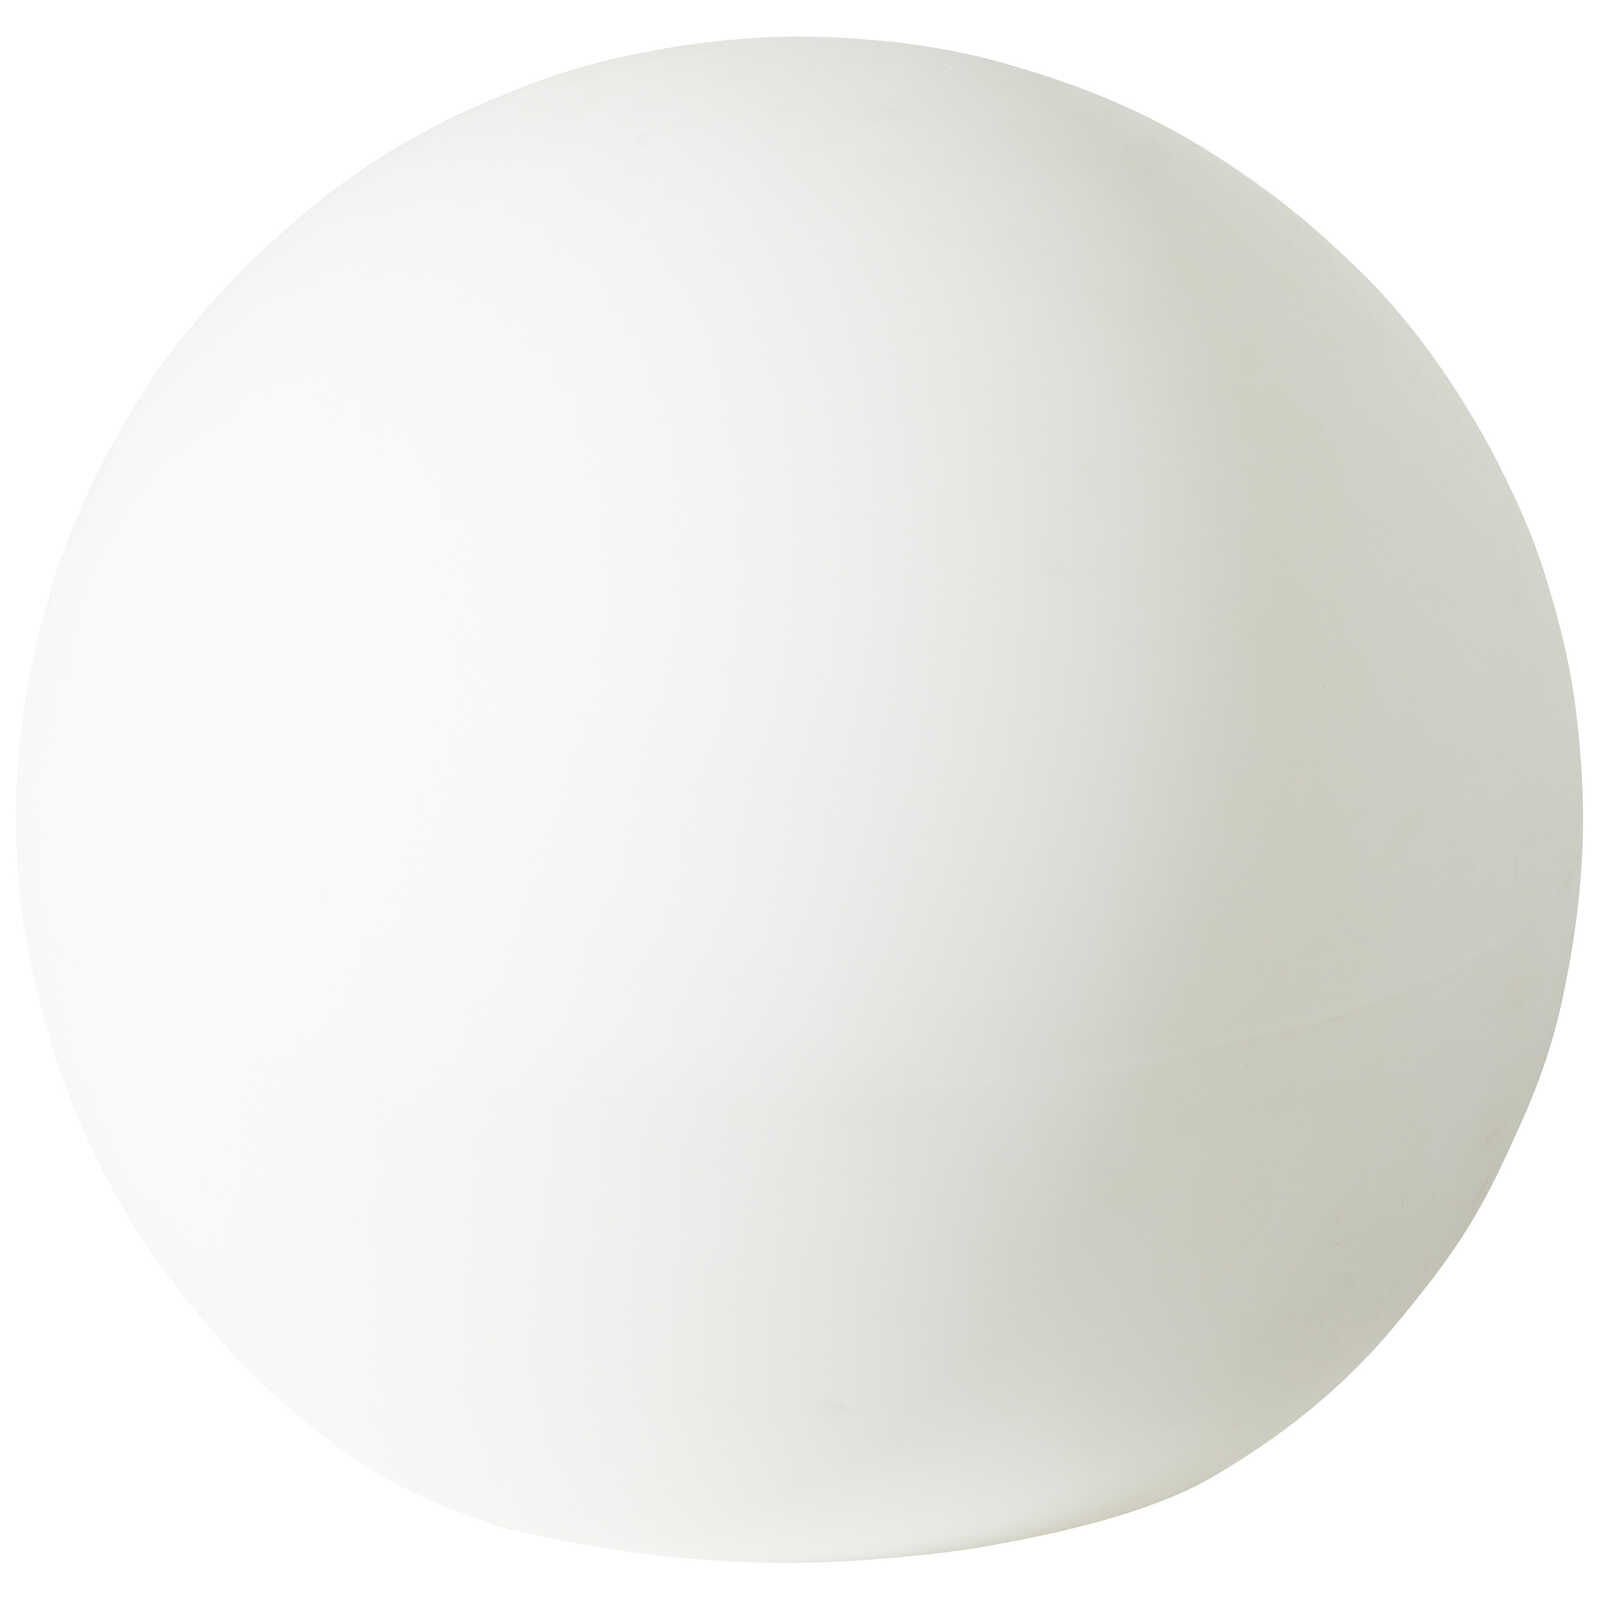             Plastic outdoor light globe - Hans 3 - White
        